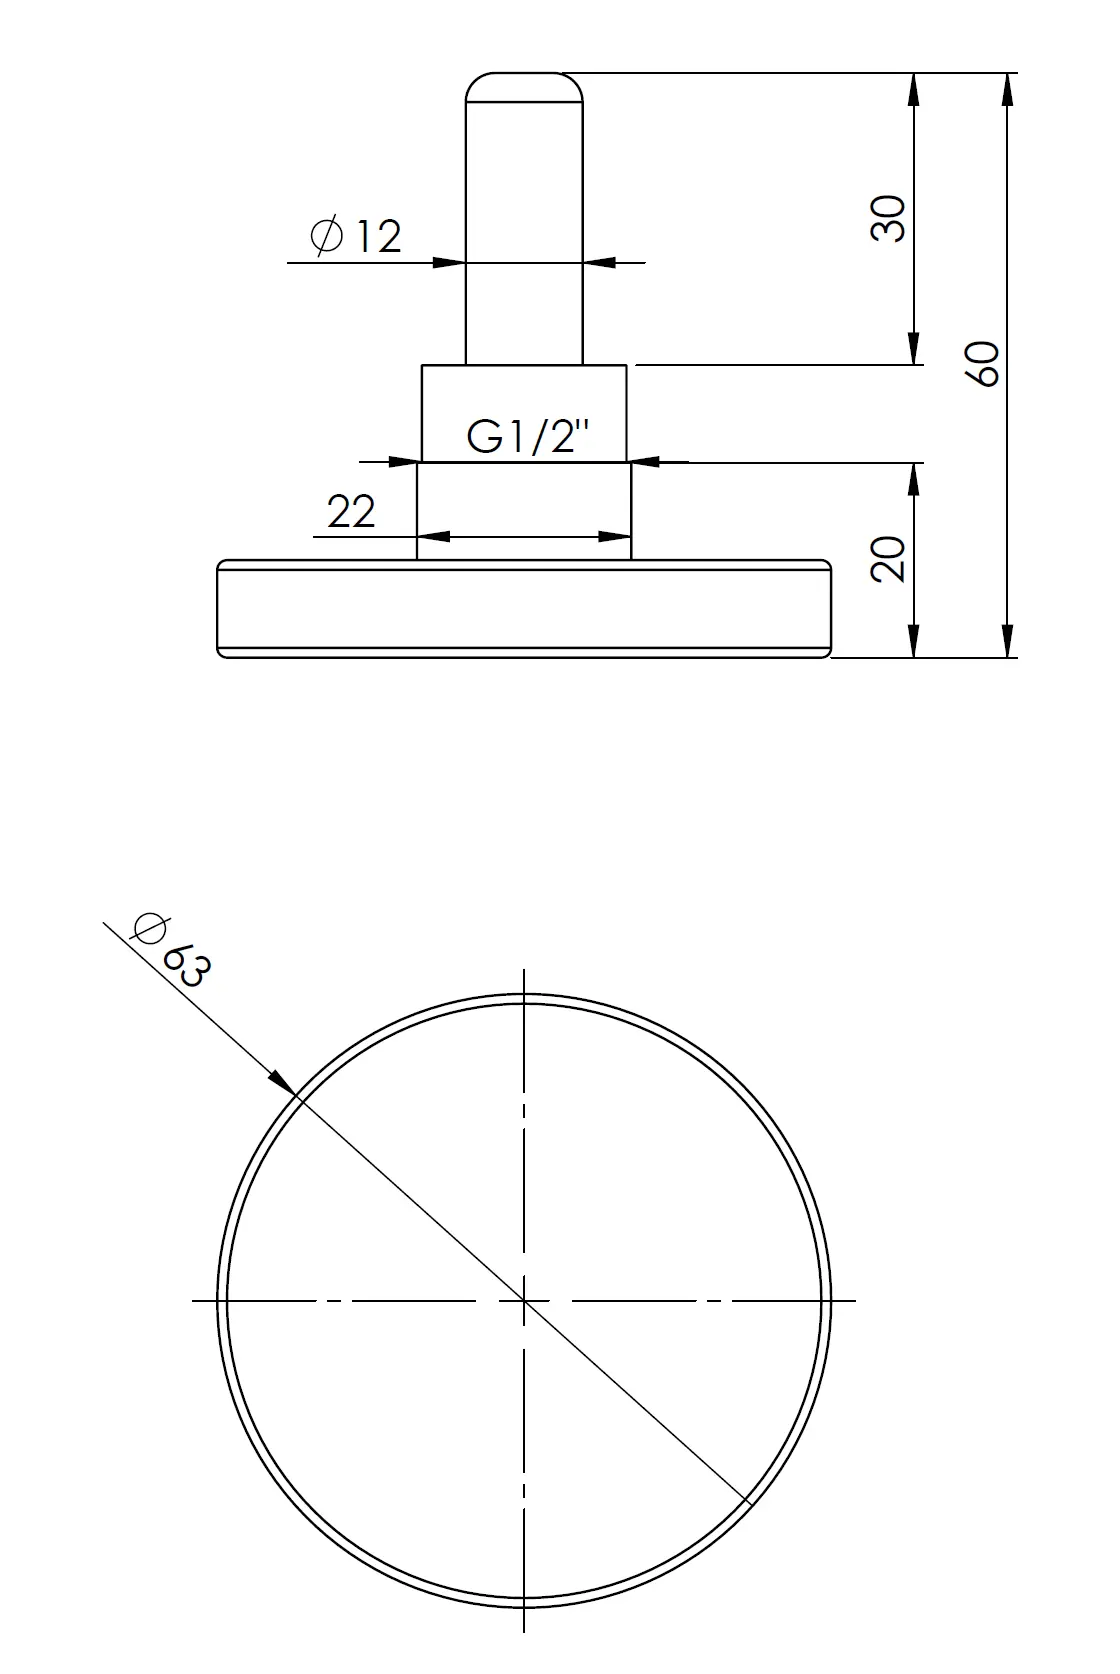 Termometr bimetaliczny BiTh 63, fi63 mm, 0÷60°C, L 40 mm, G1/2", ax, kl. 2 - budowa